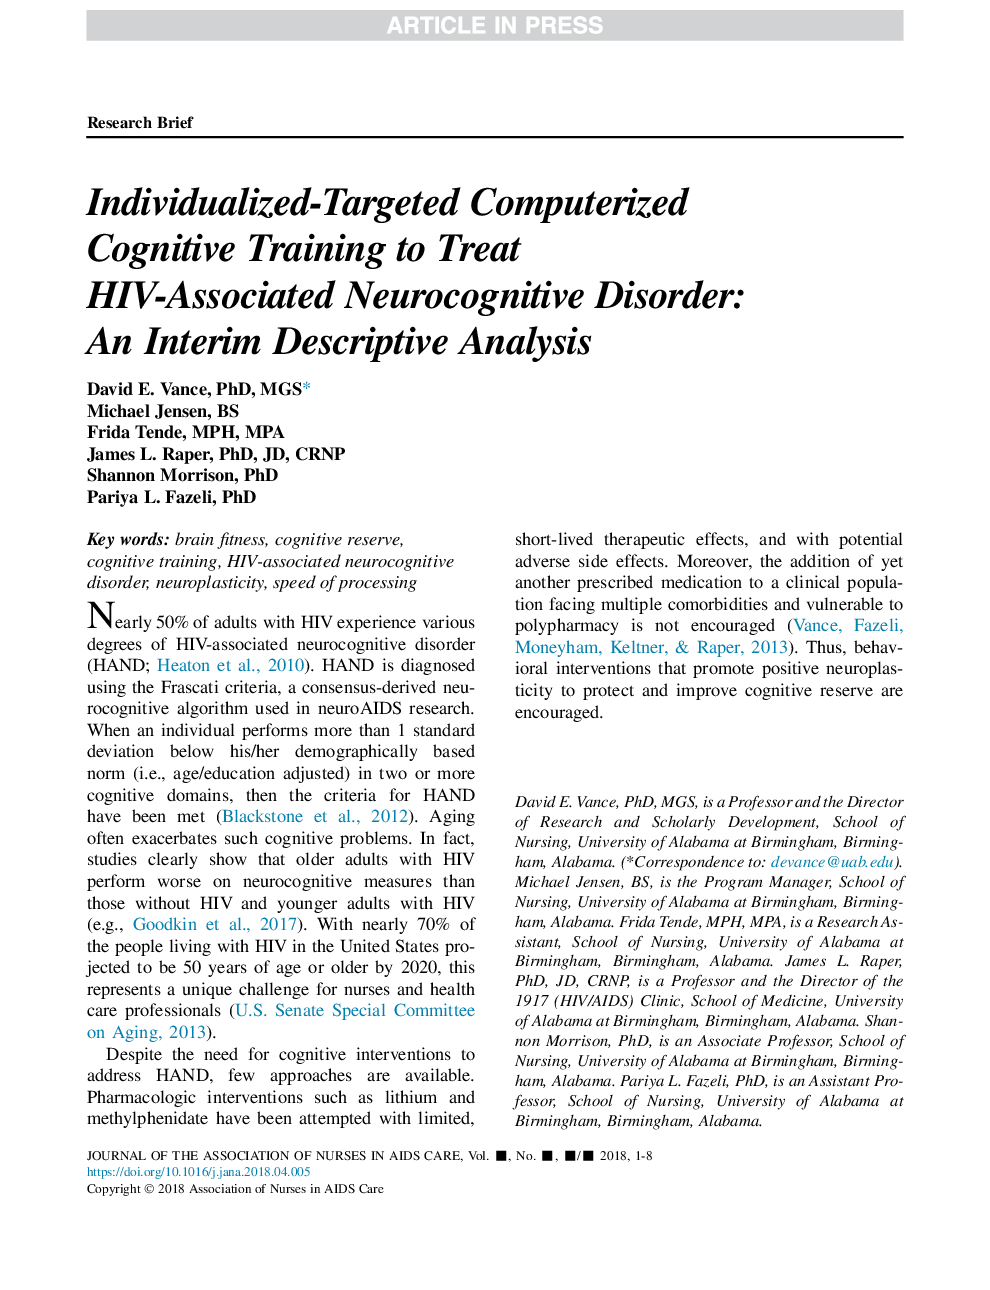 آموزش شناختی کامپیوتری فردی هدفمند برای درمان بیماری های مرتبط با اختلال نعوظ مرتبط با ایدز: یک تحلیل توصیفی موقت 